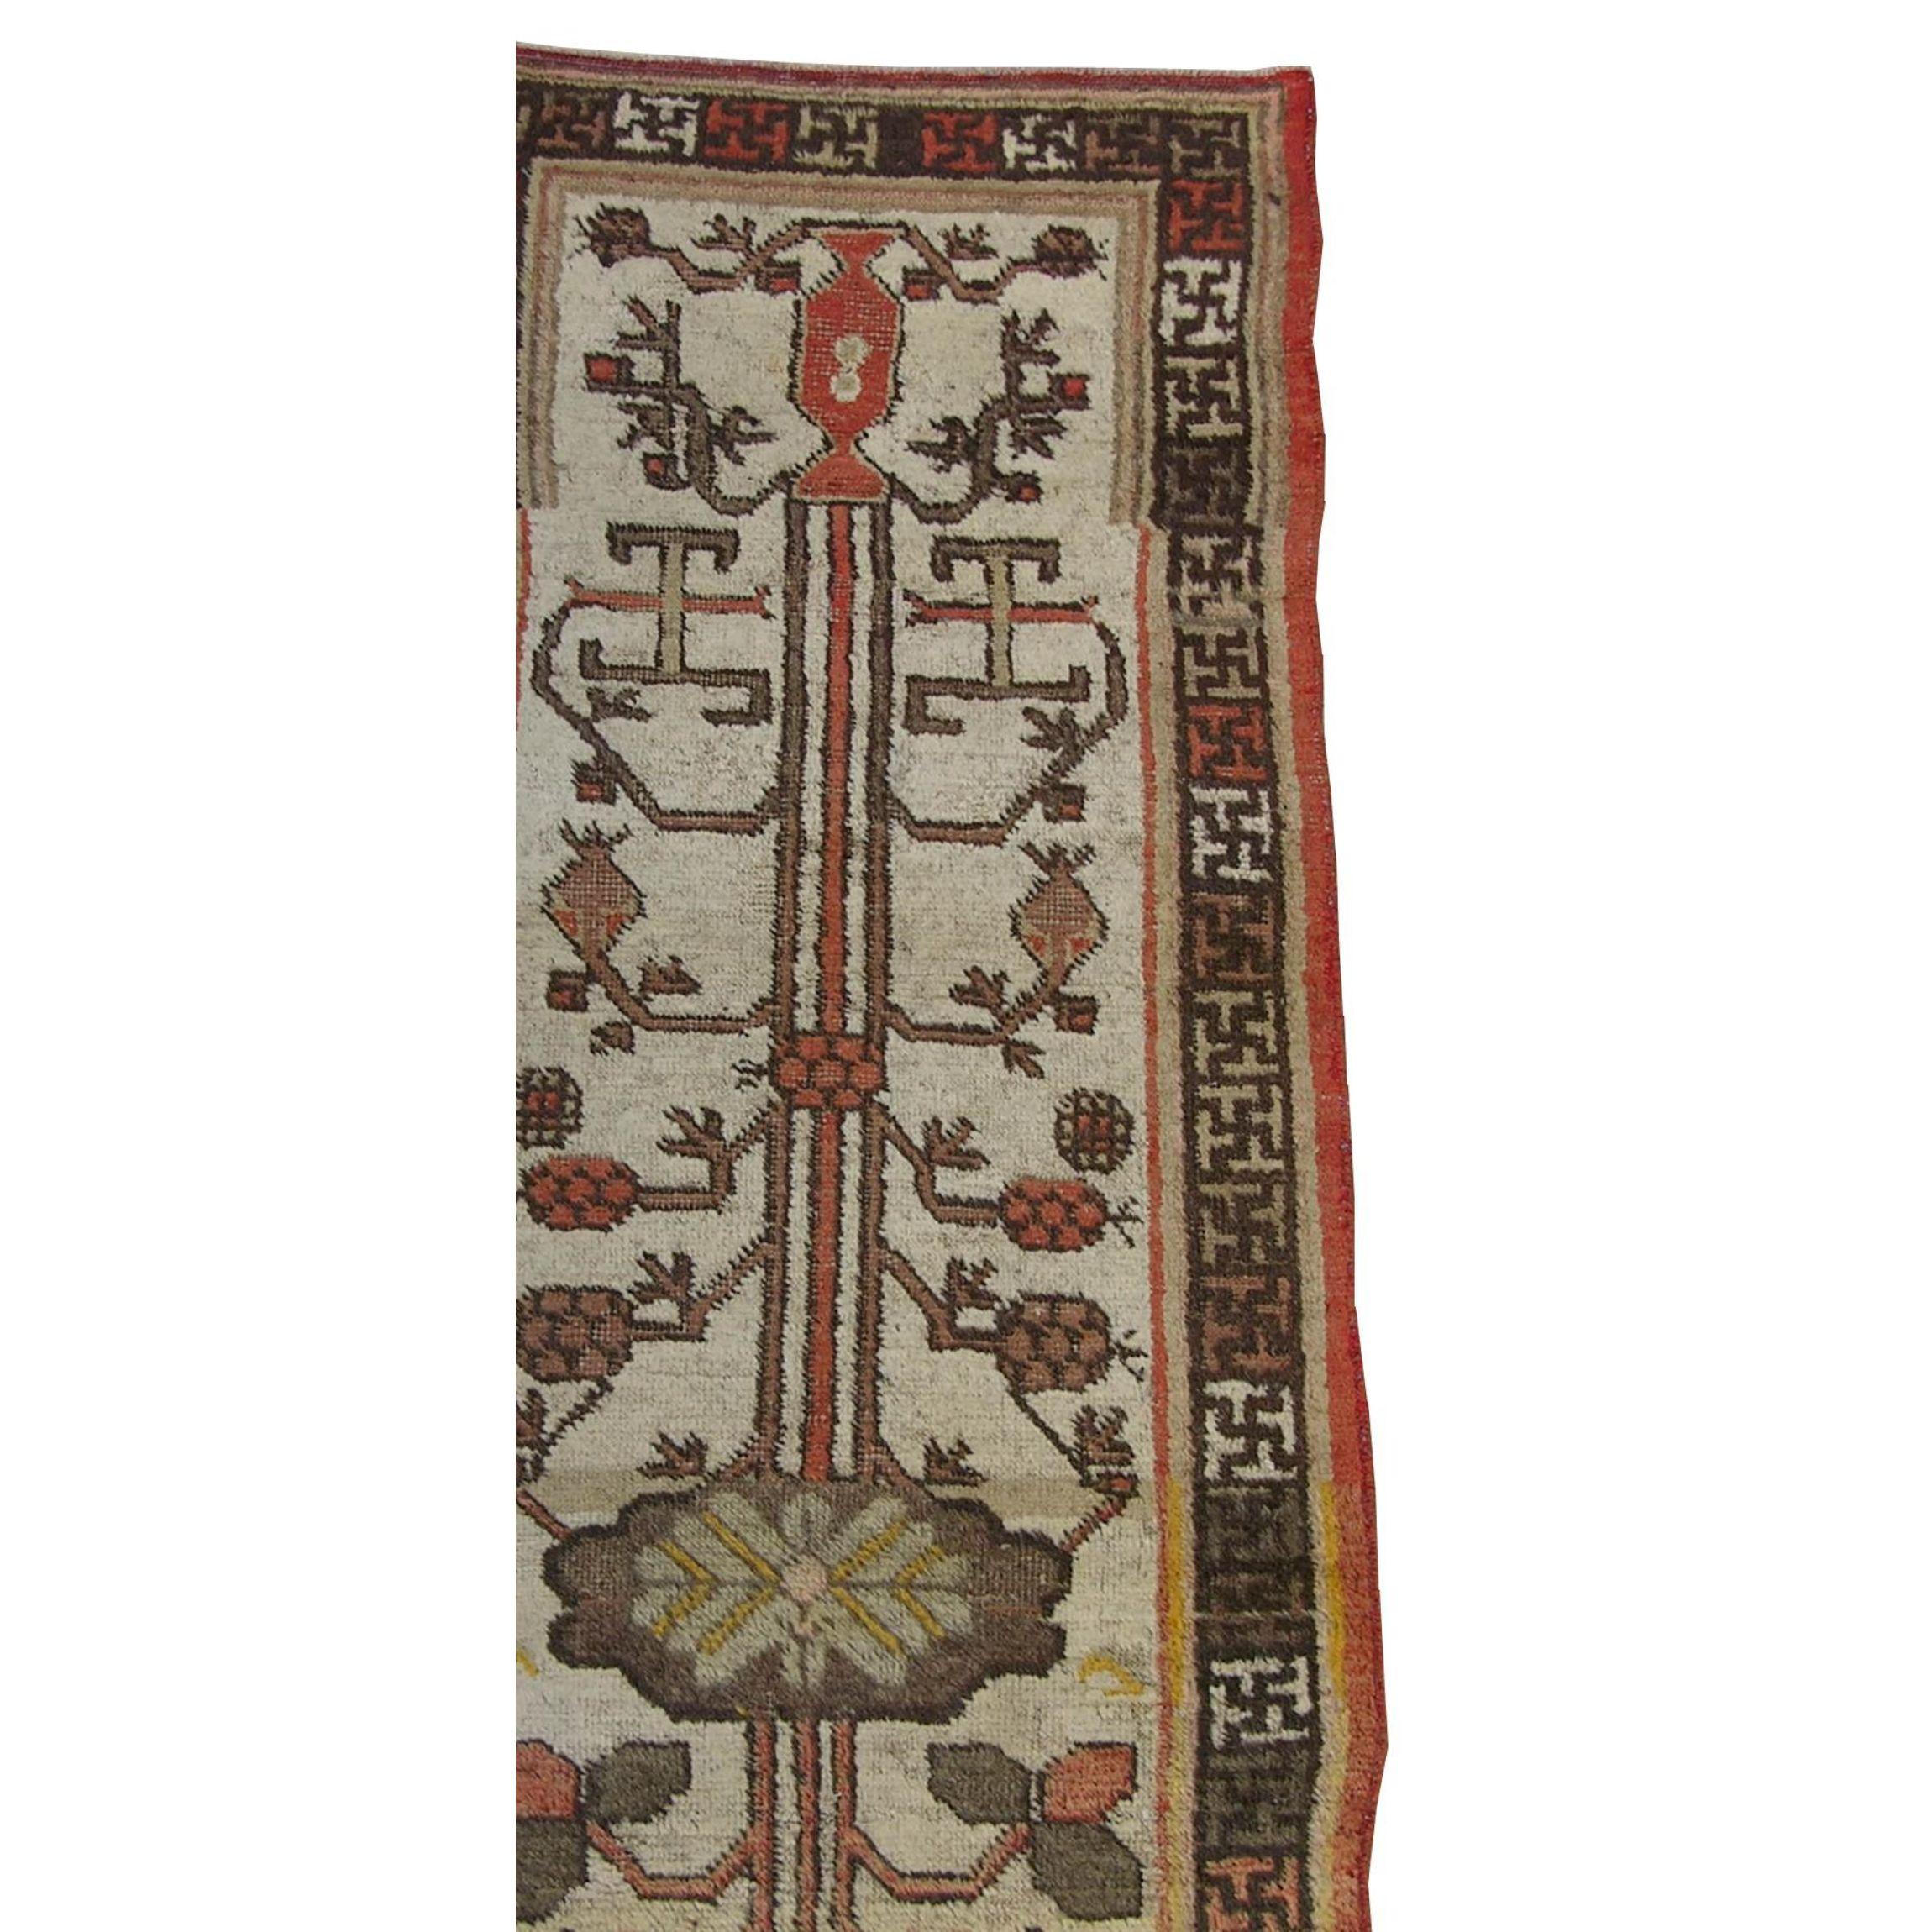 Tapis Ouzbek Khotan Samarkand du début du 19ème siècle 2'3'' X 5'9'', tribal et traditionnel, laine sur base de coton, couleur bronze, marron, beige